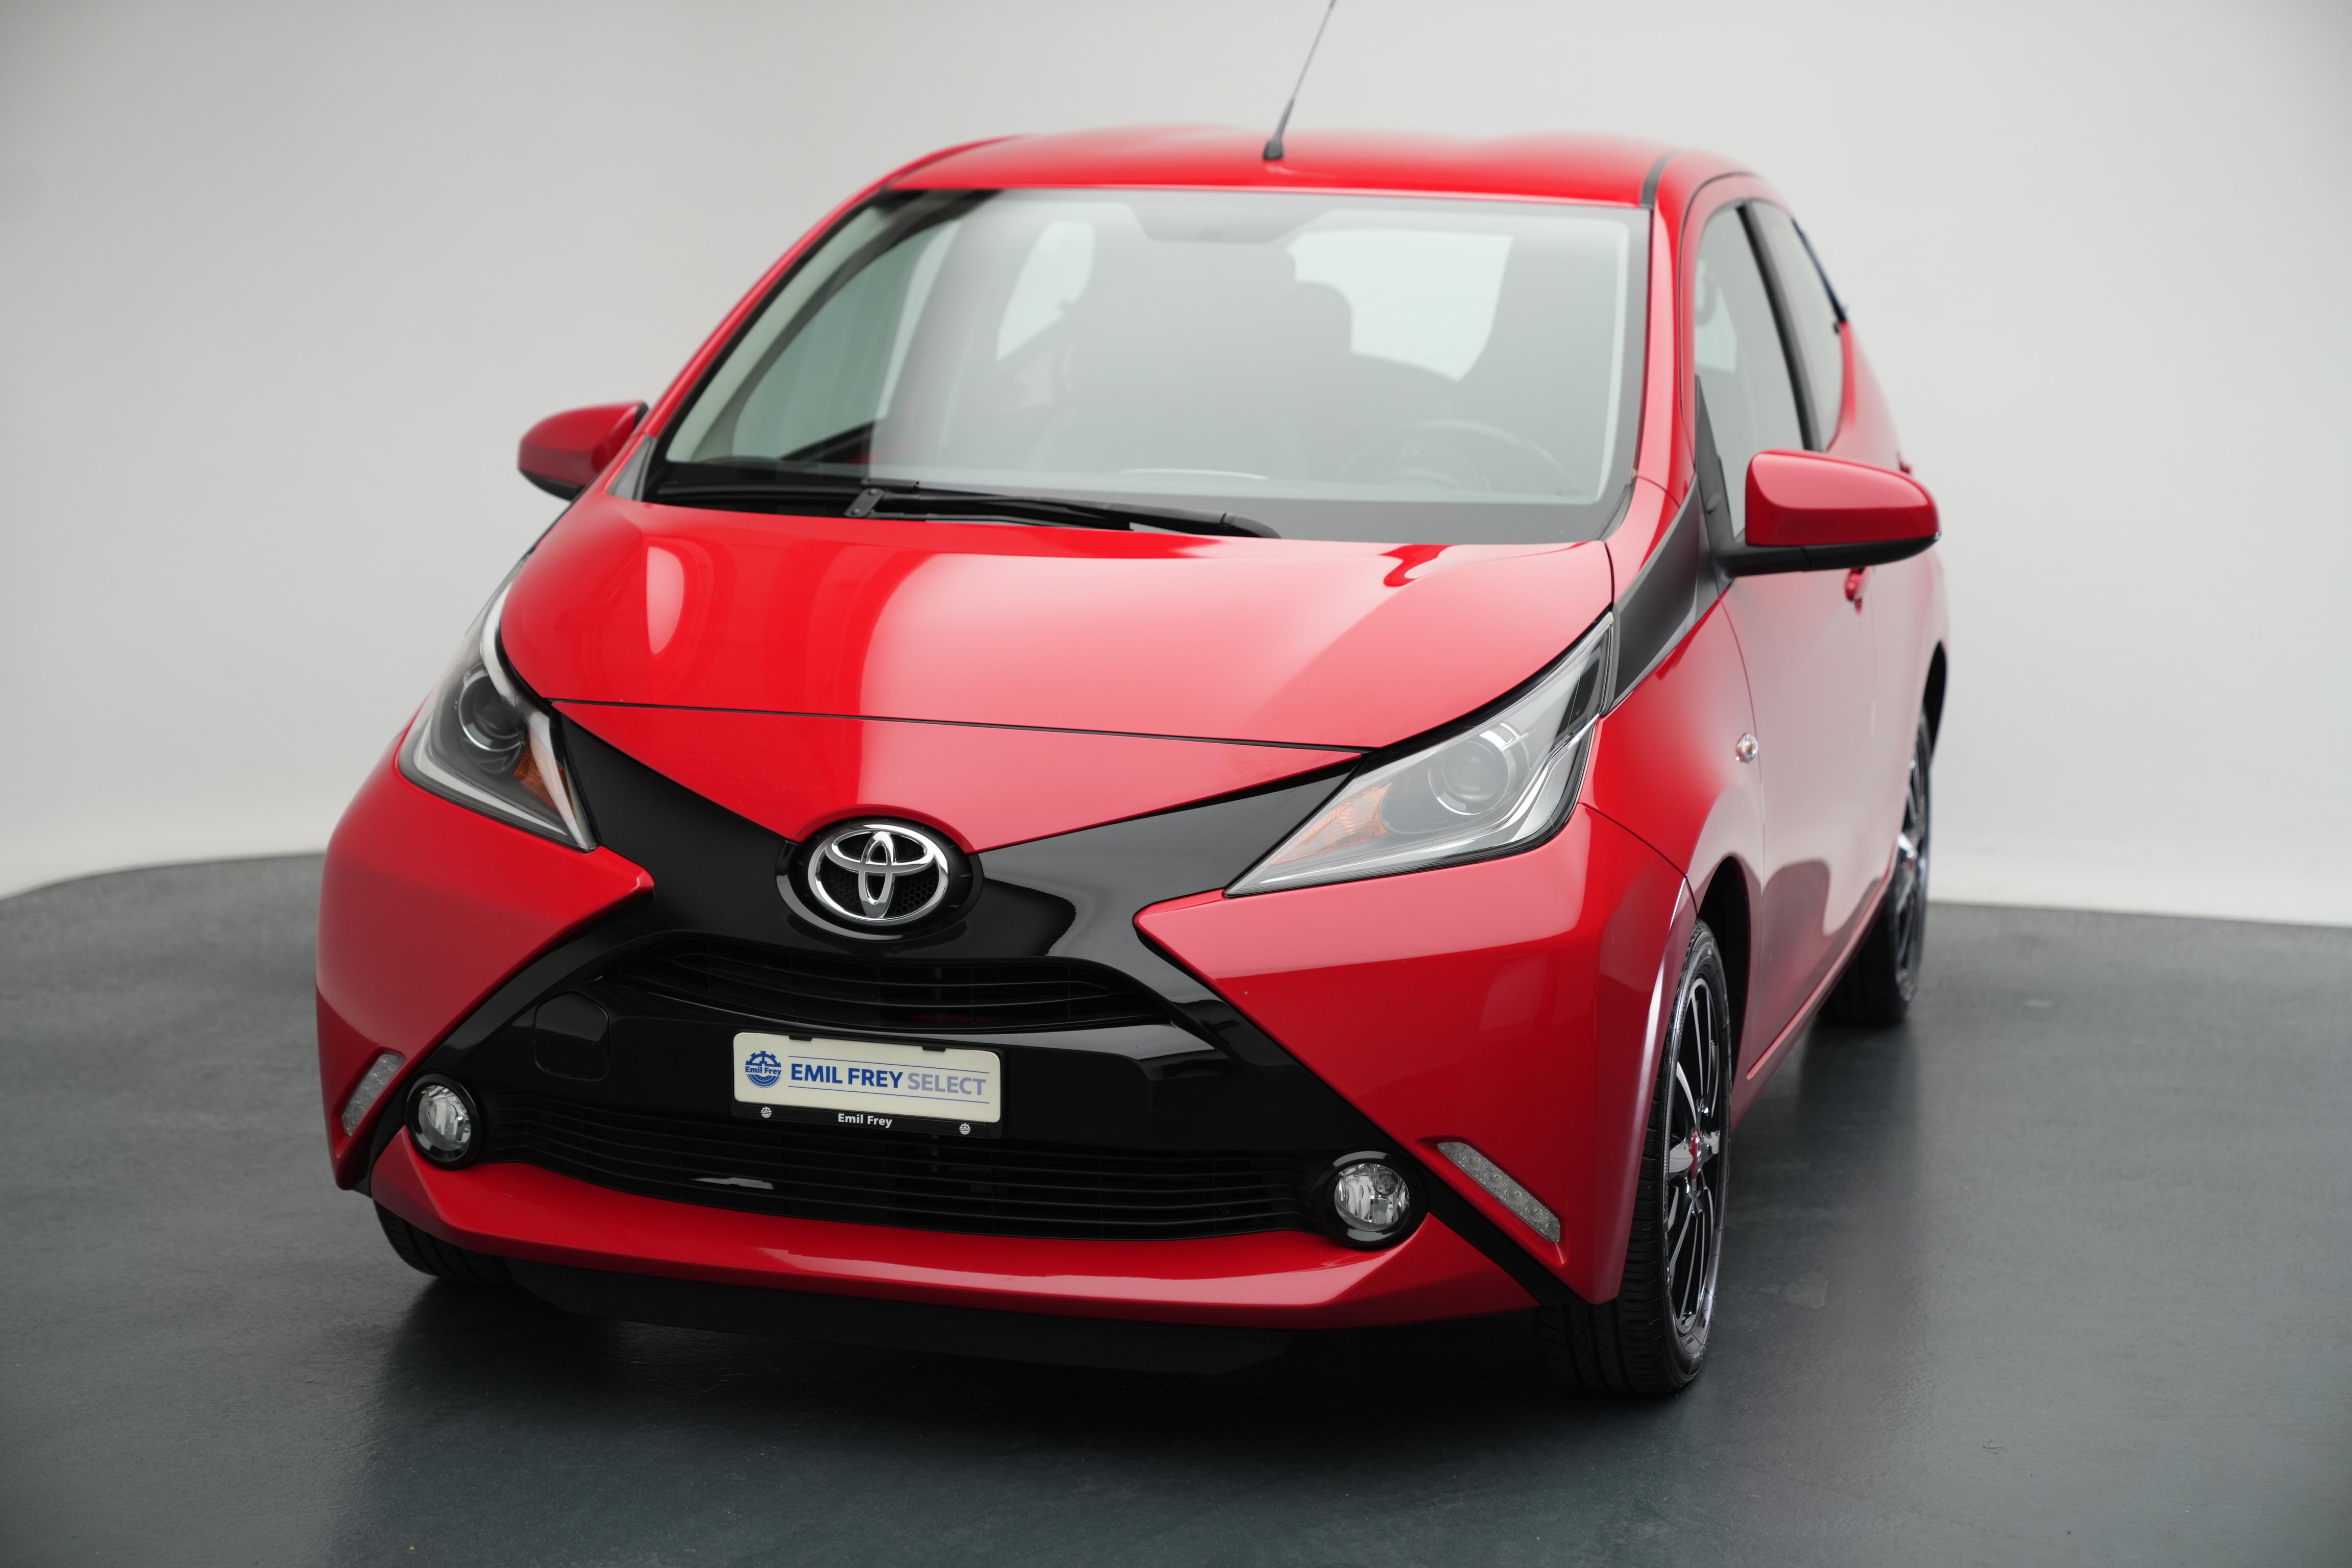 Toyota Aygo Farben: Welche Lackierung passt am besten?